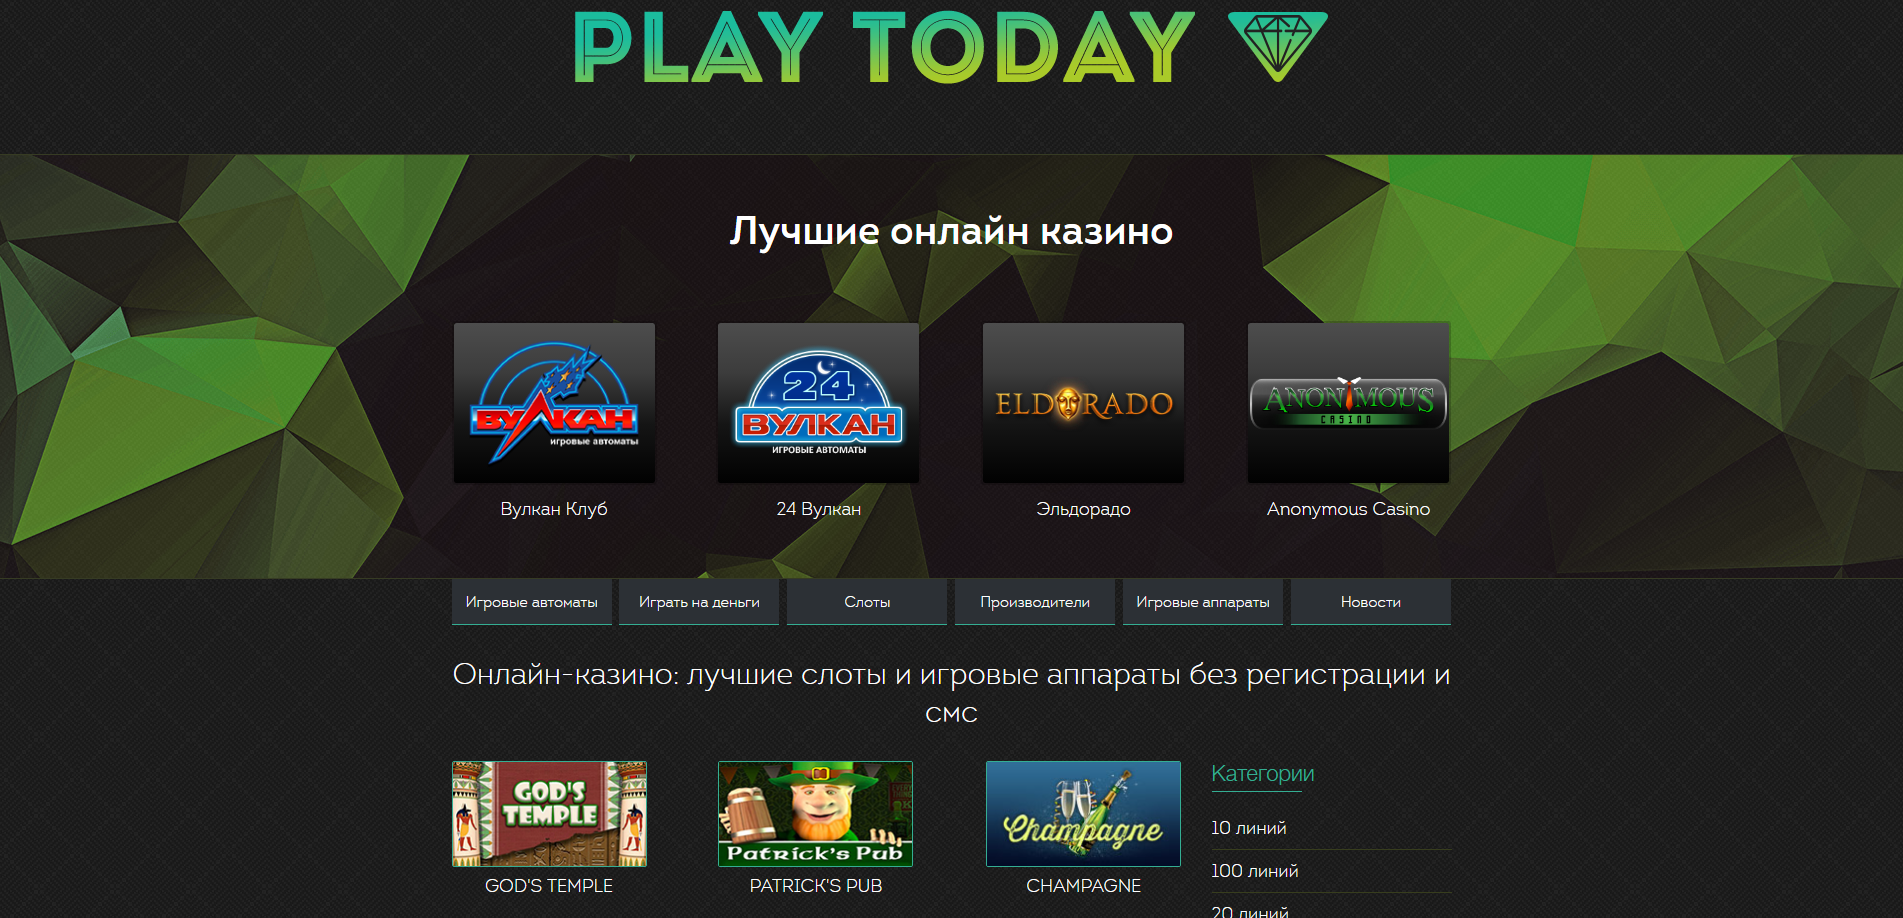 Смотреть бесплатно фильм онлайн казино игровые автоматы обезьянка играть бесплатно онлайнi